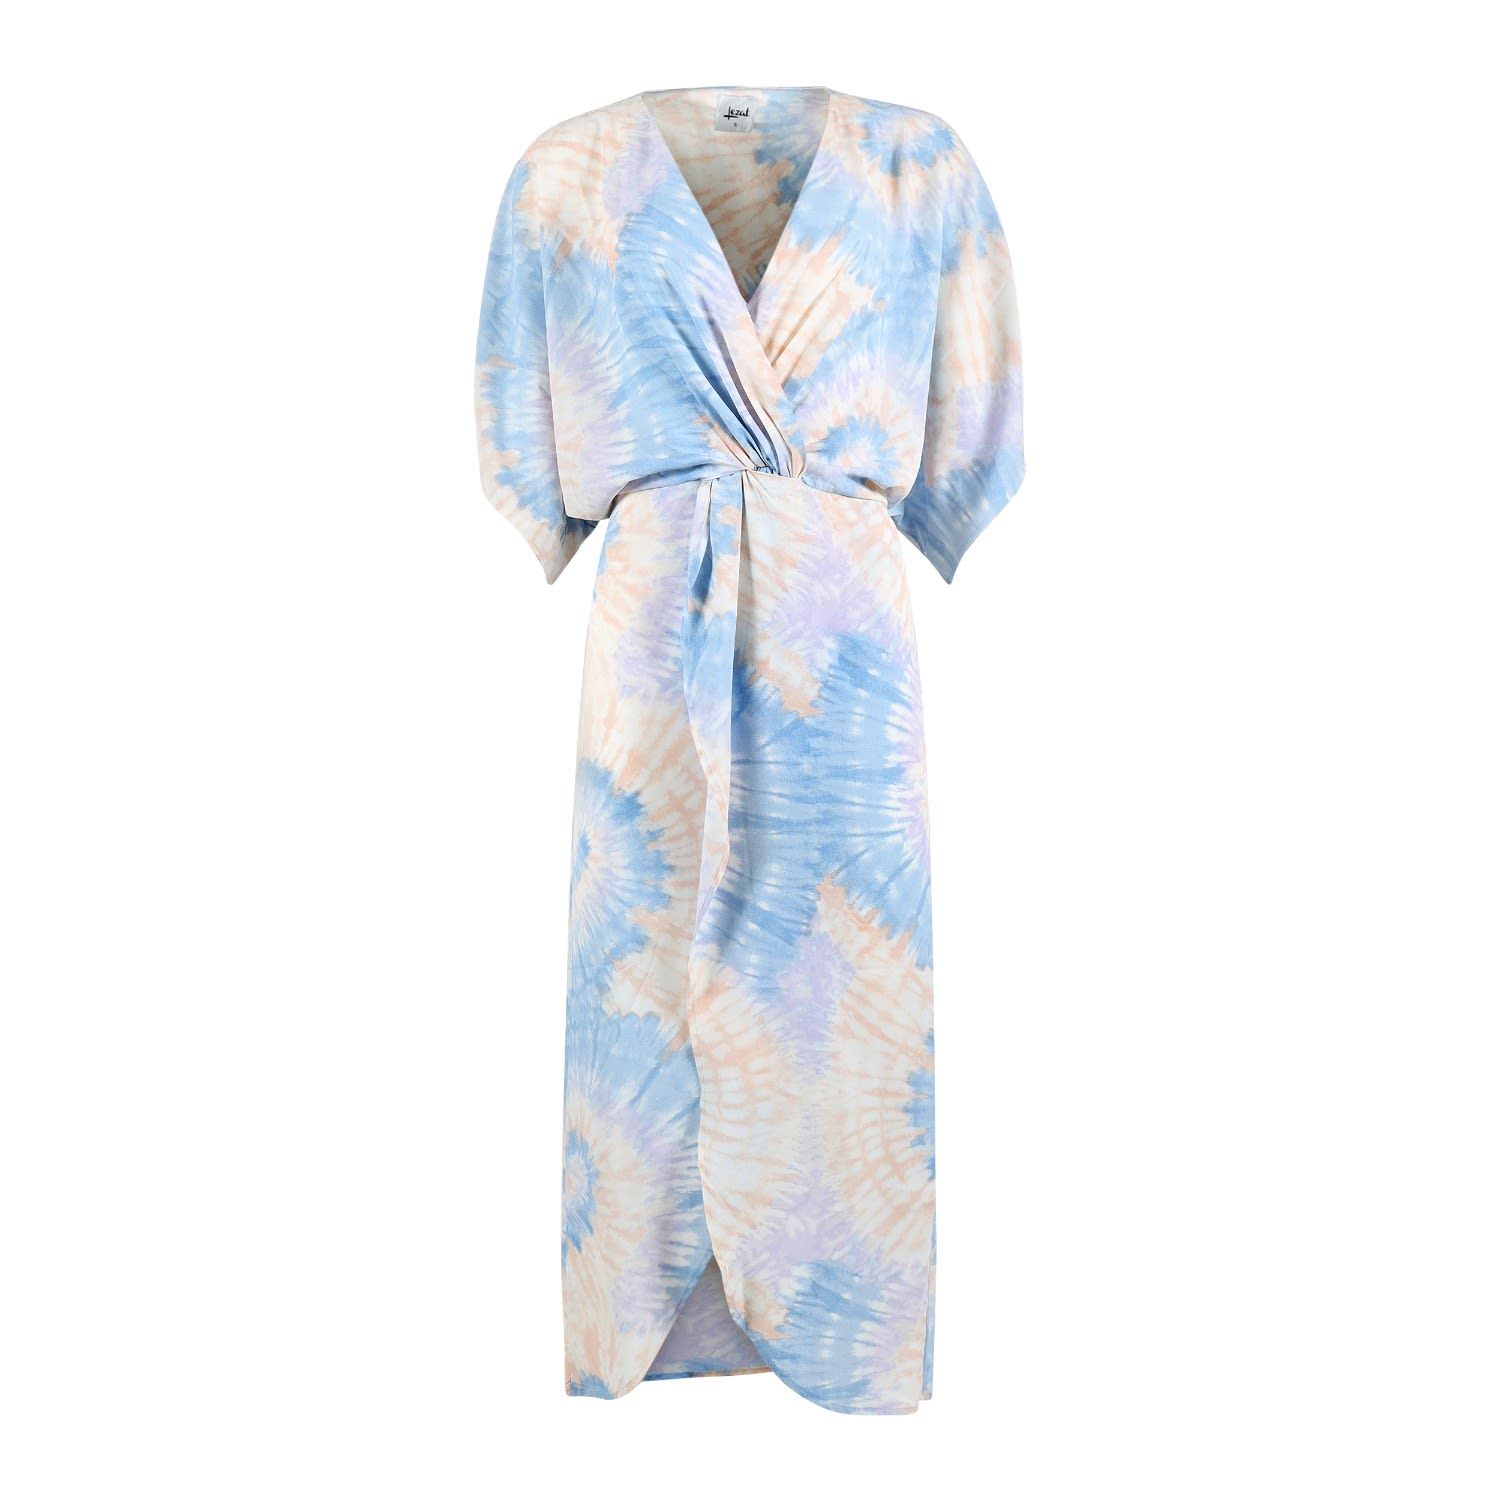 Lezat Women's Joey Maxi Dress - Ice Blue Tie Dye